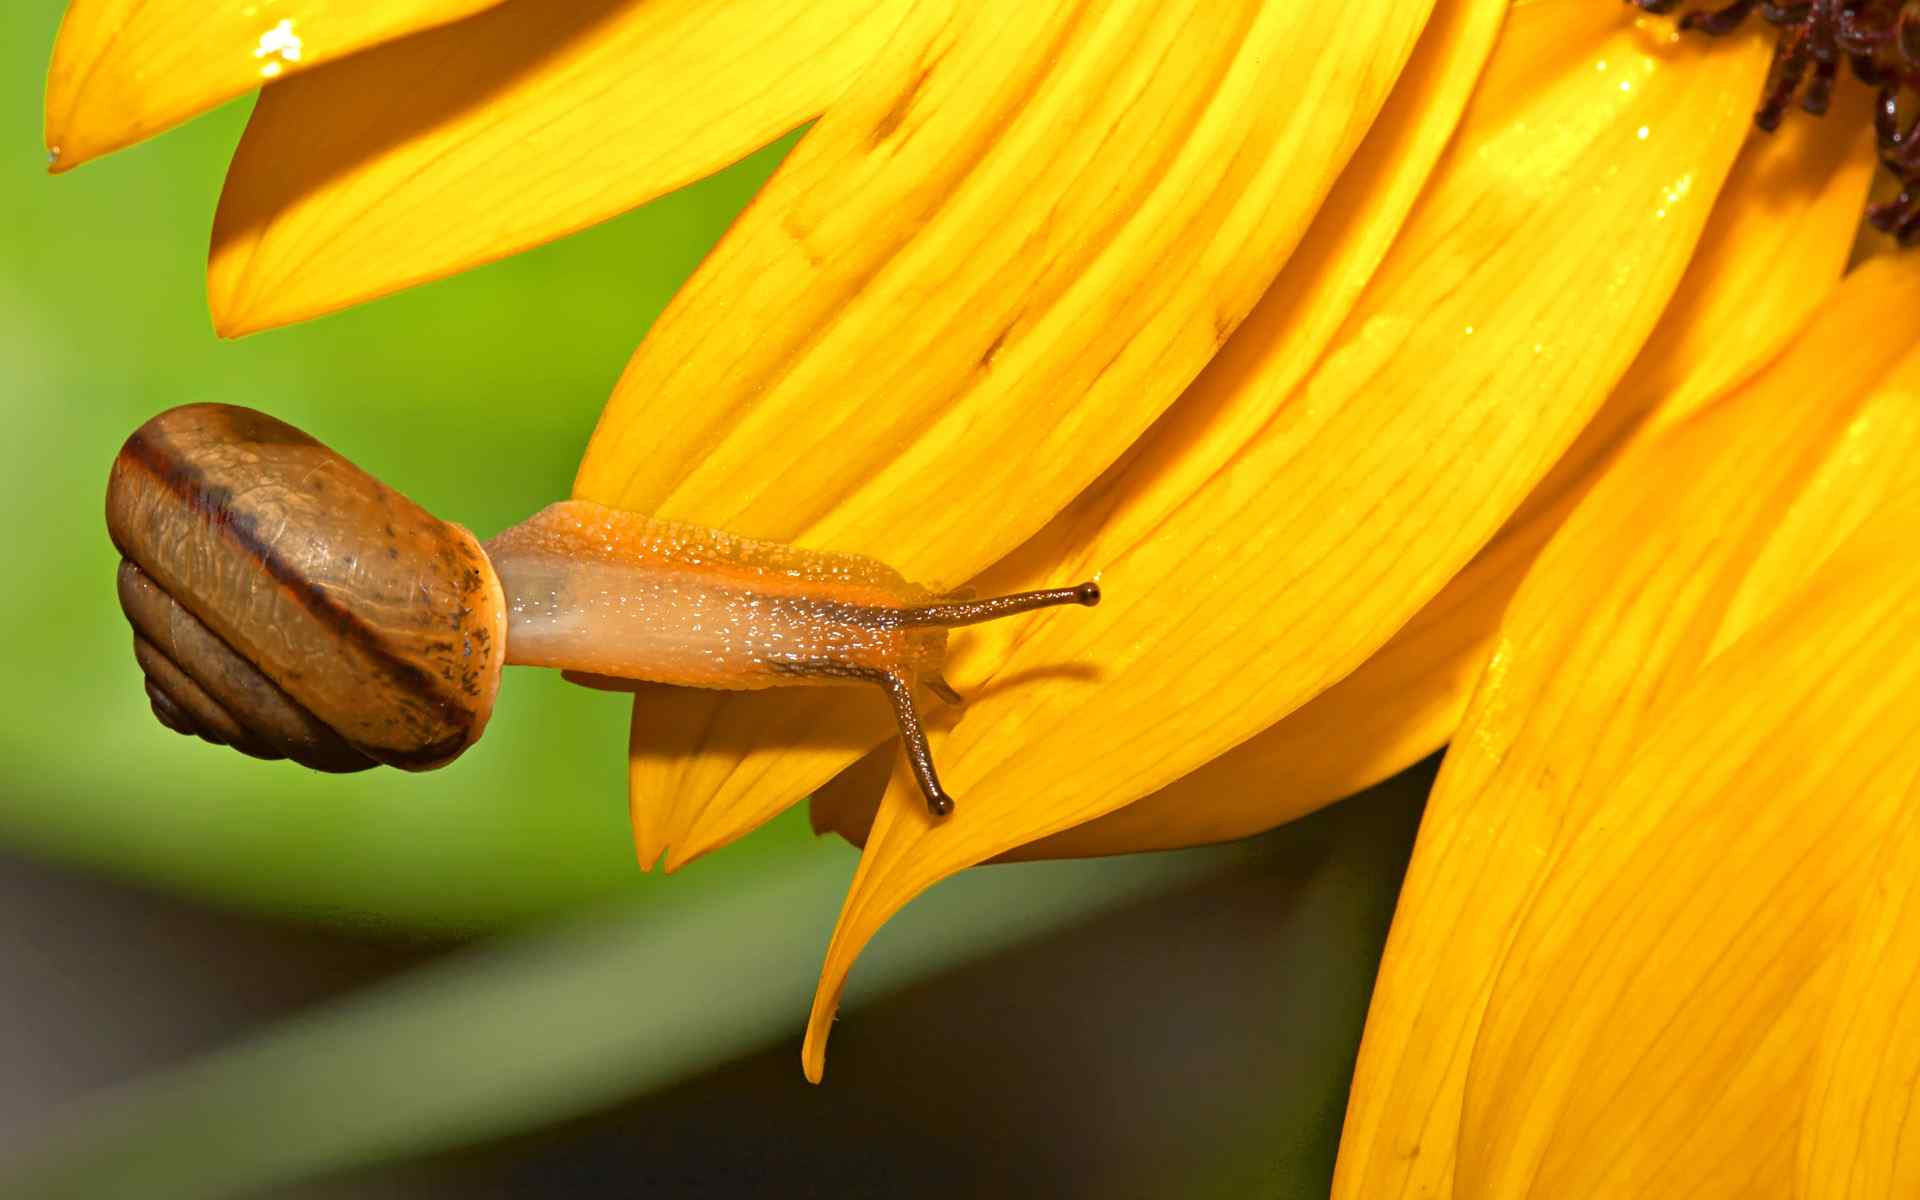  黄色嫩叶上的蜗牛超清晰图片